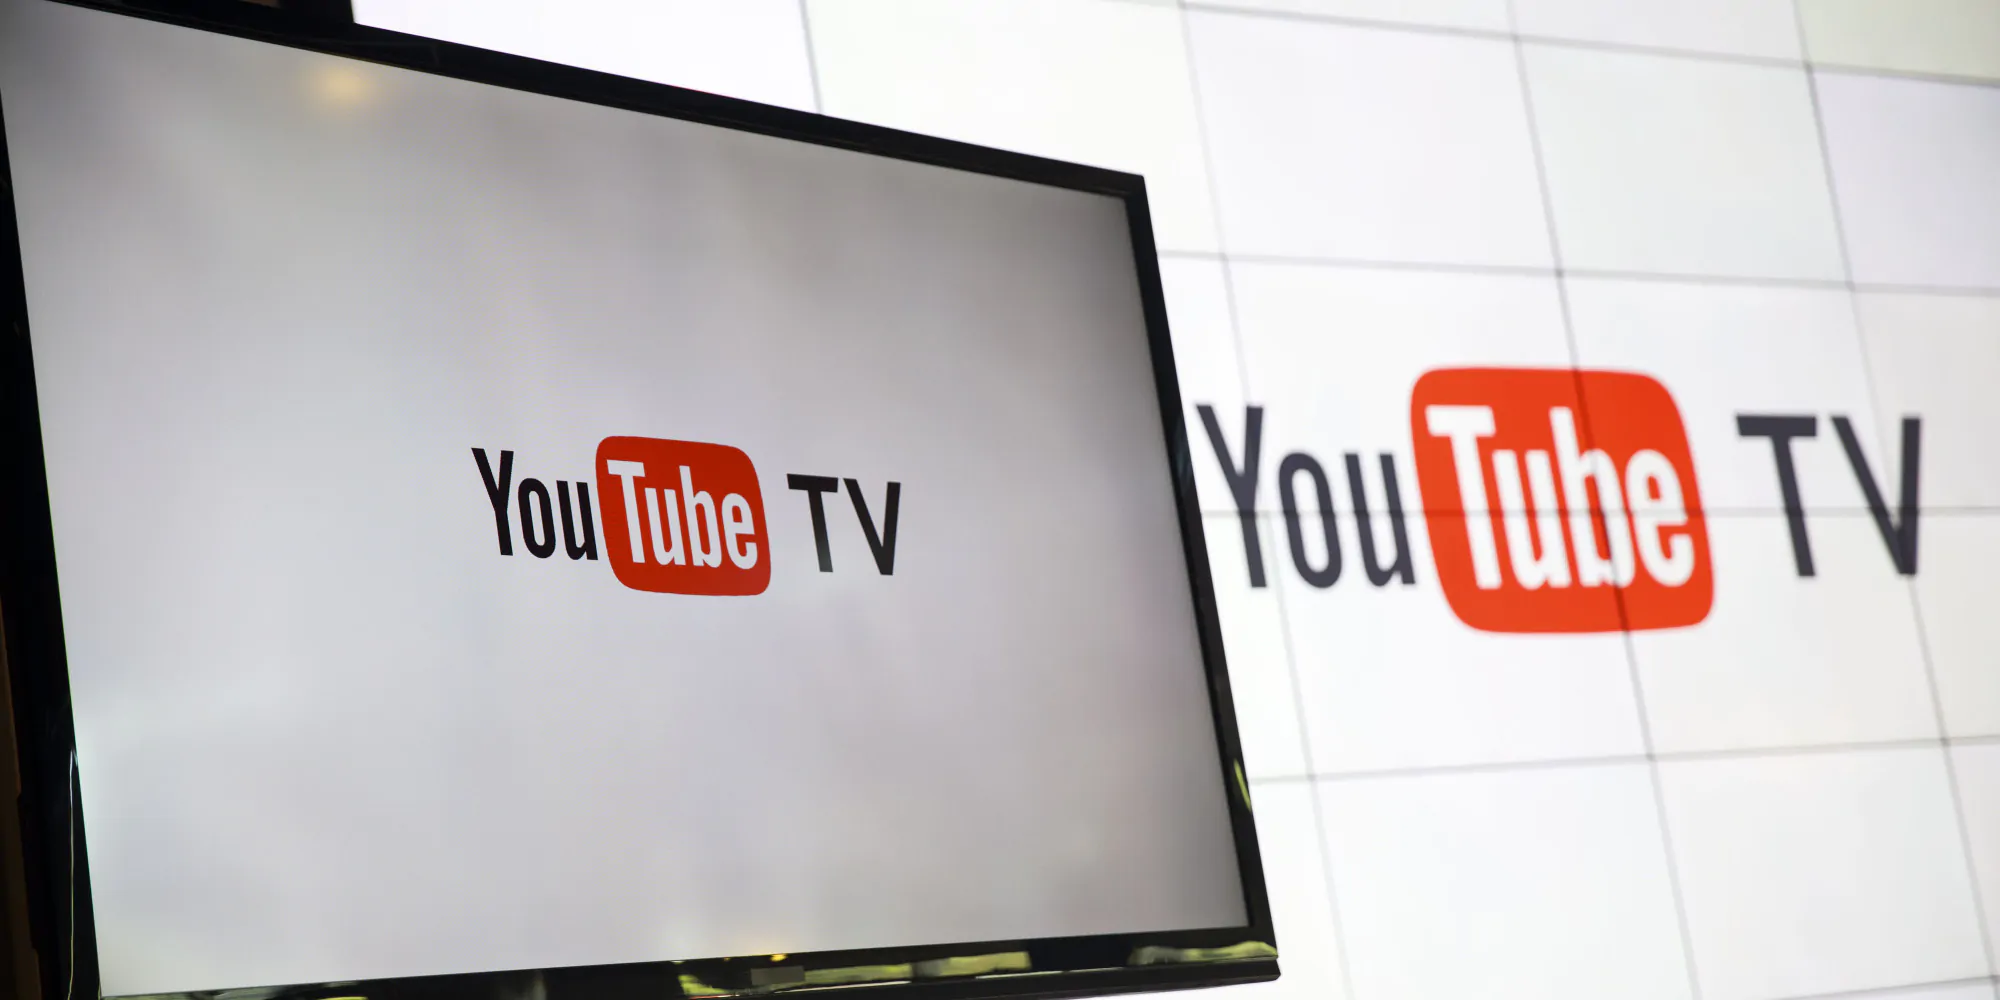 Usa, YouTube TV in 5 città con programmi in diretta streaming